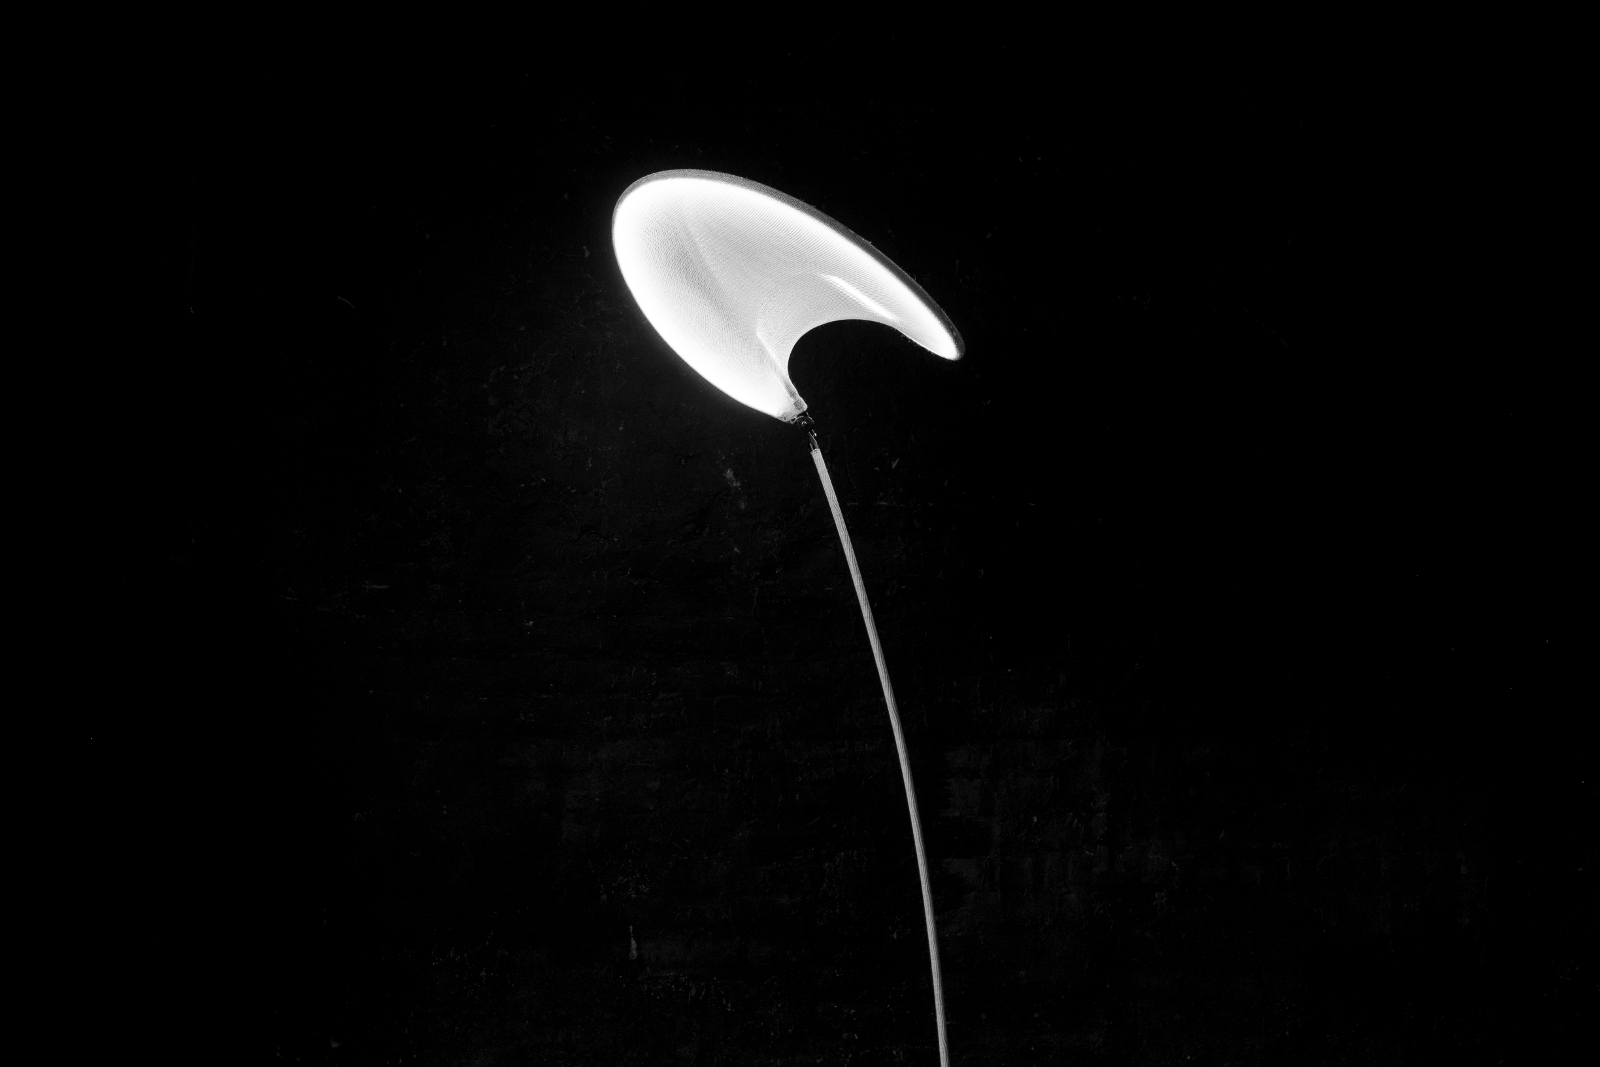 llll.01 Light by Sarah Dehandschutter